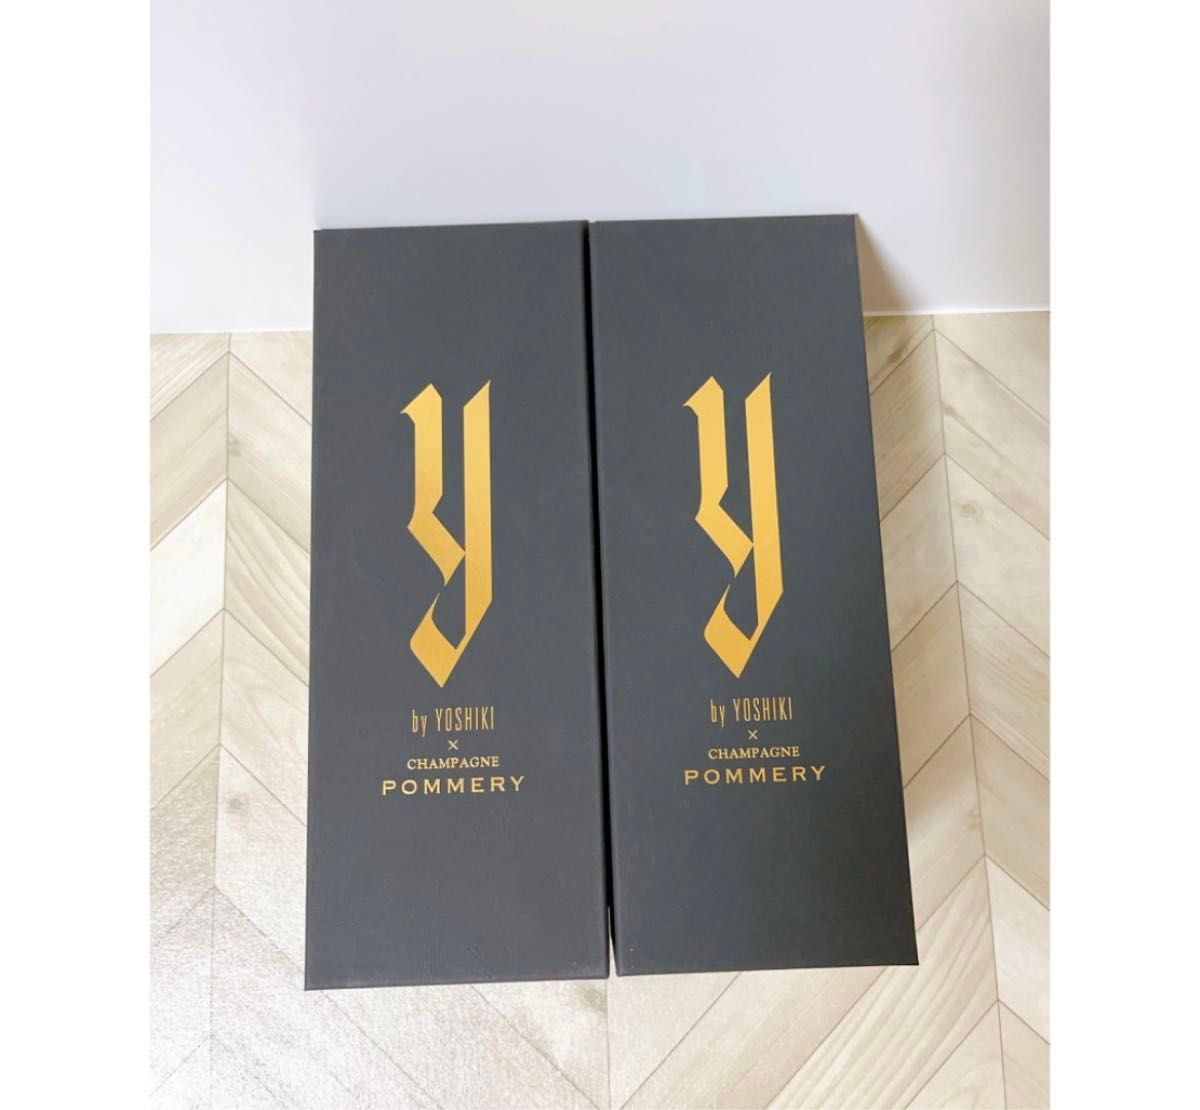 YOSHIKIシャンパン ワイ・バイ・ヨシキ×シャンパーニュ ポメリー(箱付き)×2本